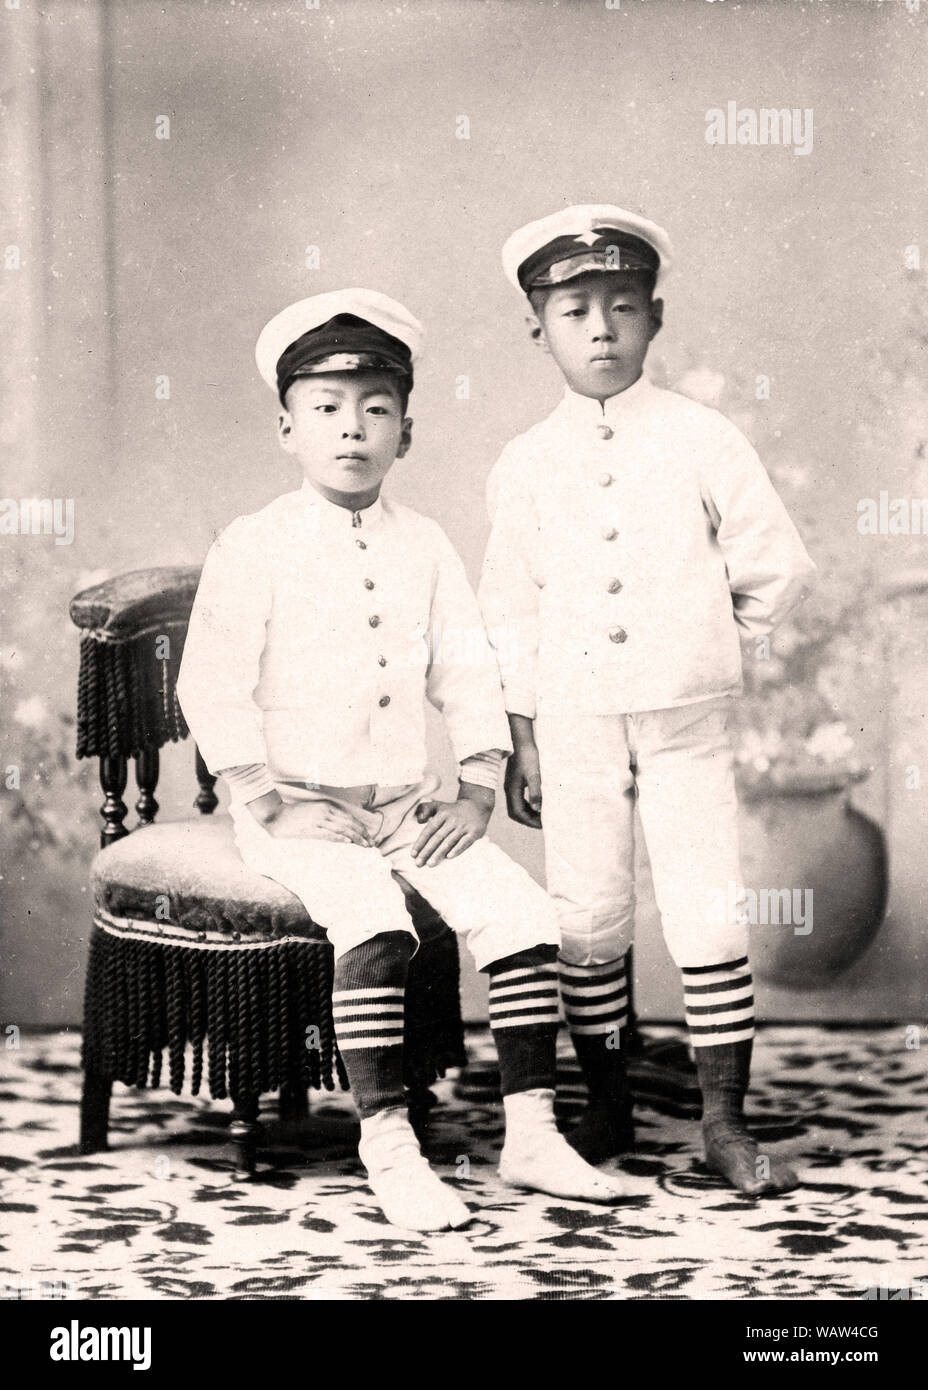 [ 1890 Giappone - ragazzi giapponesi in bianco uniforme ] - Studio foto di 10 e 11 anni fratelli giapponesi in uniforme. In data 11 settembre 1892 (Meiji 25). Xx secolo gelatina vintage silver stampa. Foto Stock